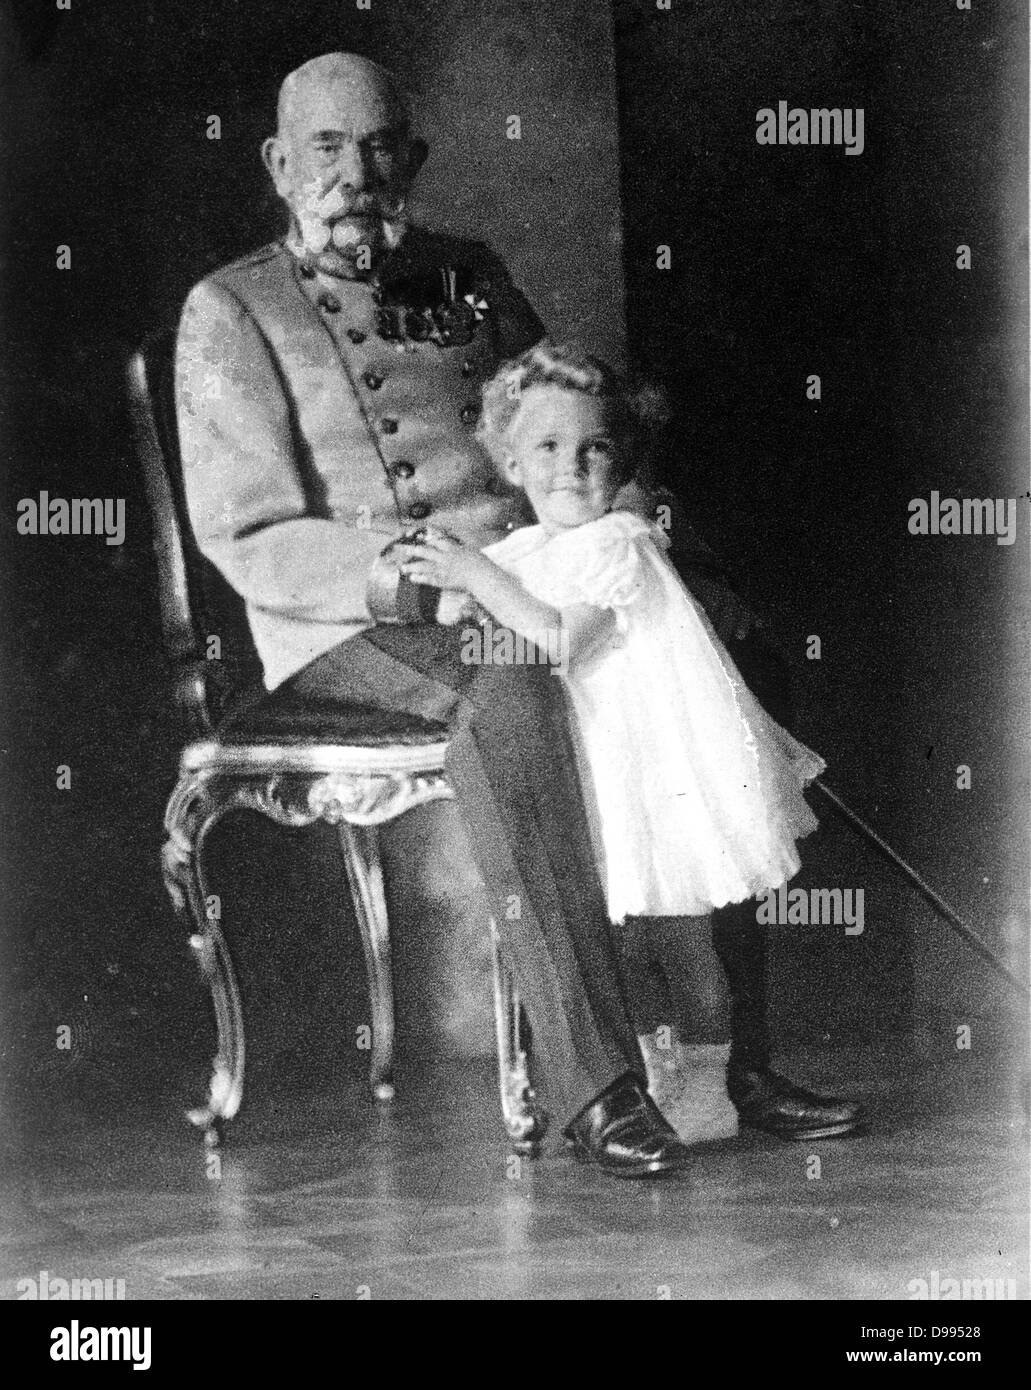 Franz Joseph I (1830-1916), Kaiser von Österreich und König von Ungarn 1848-1916, mit seinem ururneffe Otto von Habsburg (geboren 1912). Stockfoto